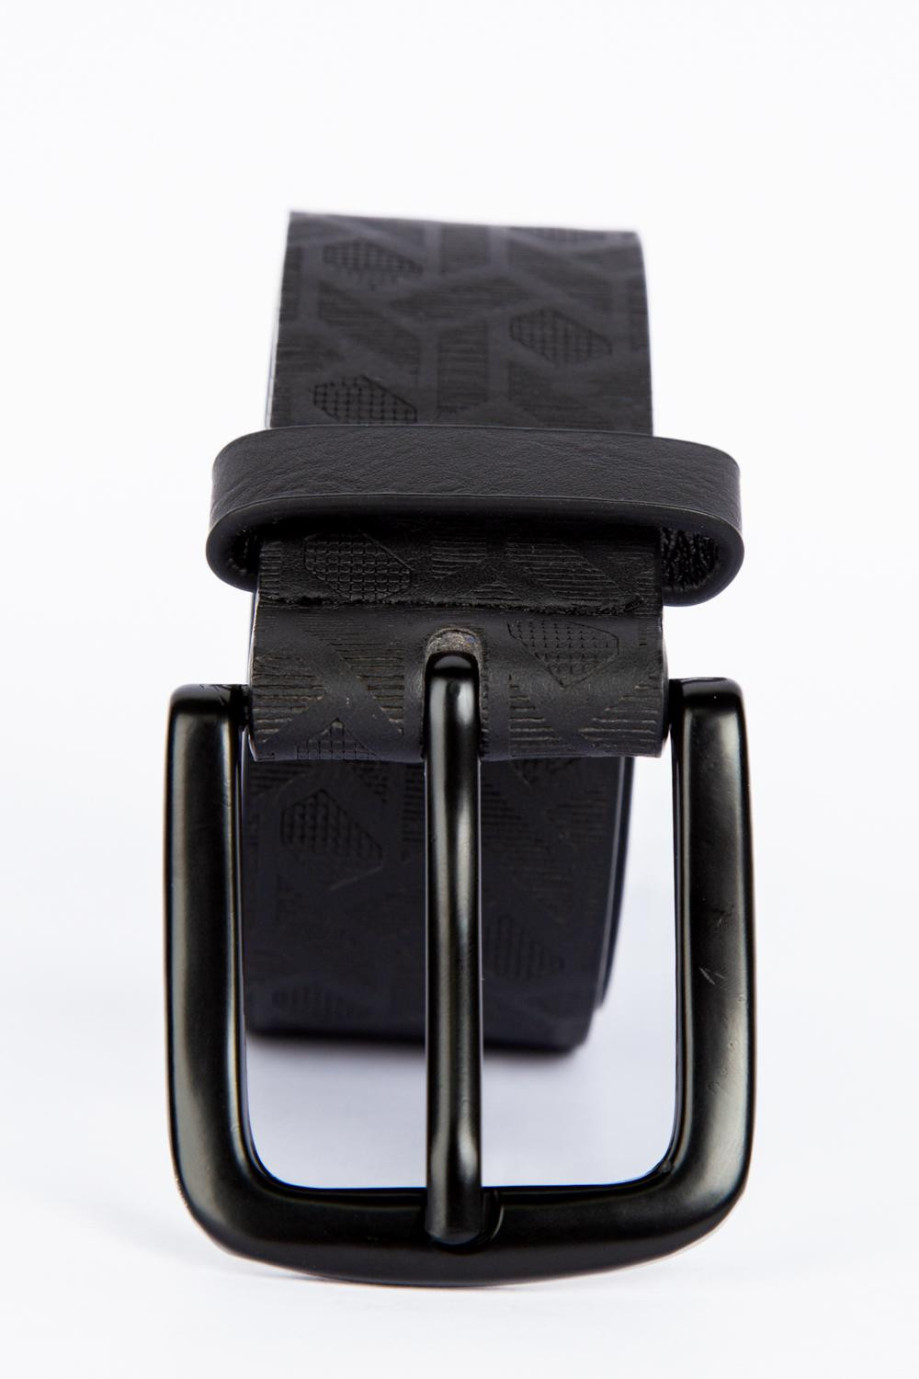 Cinturón sintético negro con texturas y hebilla cuadrada metálica